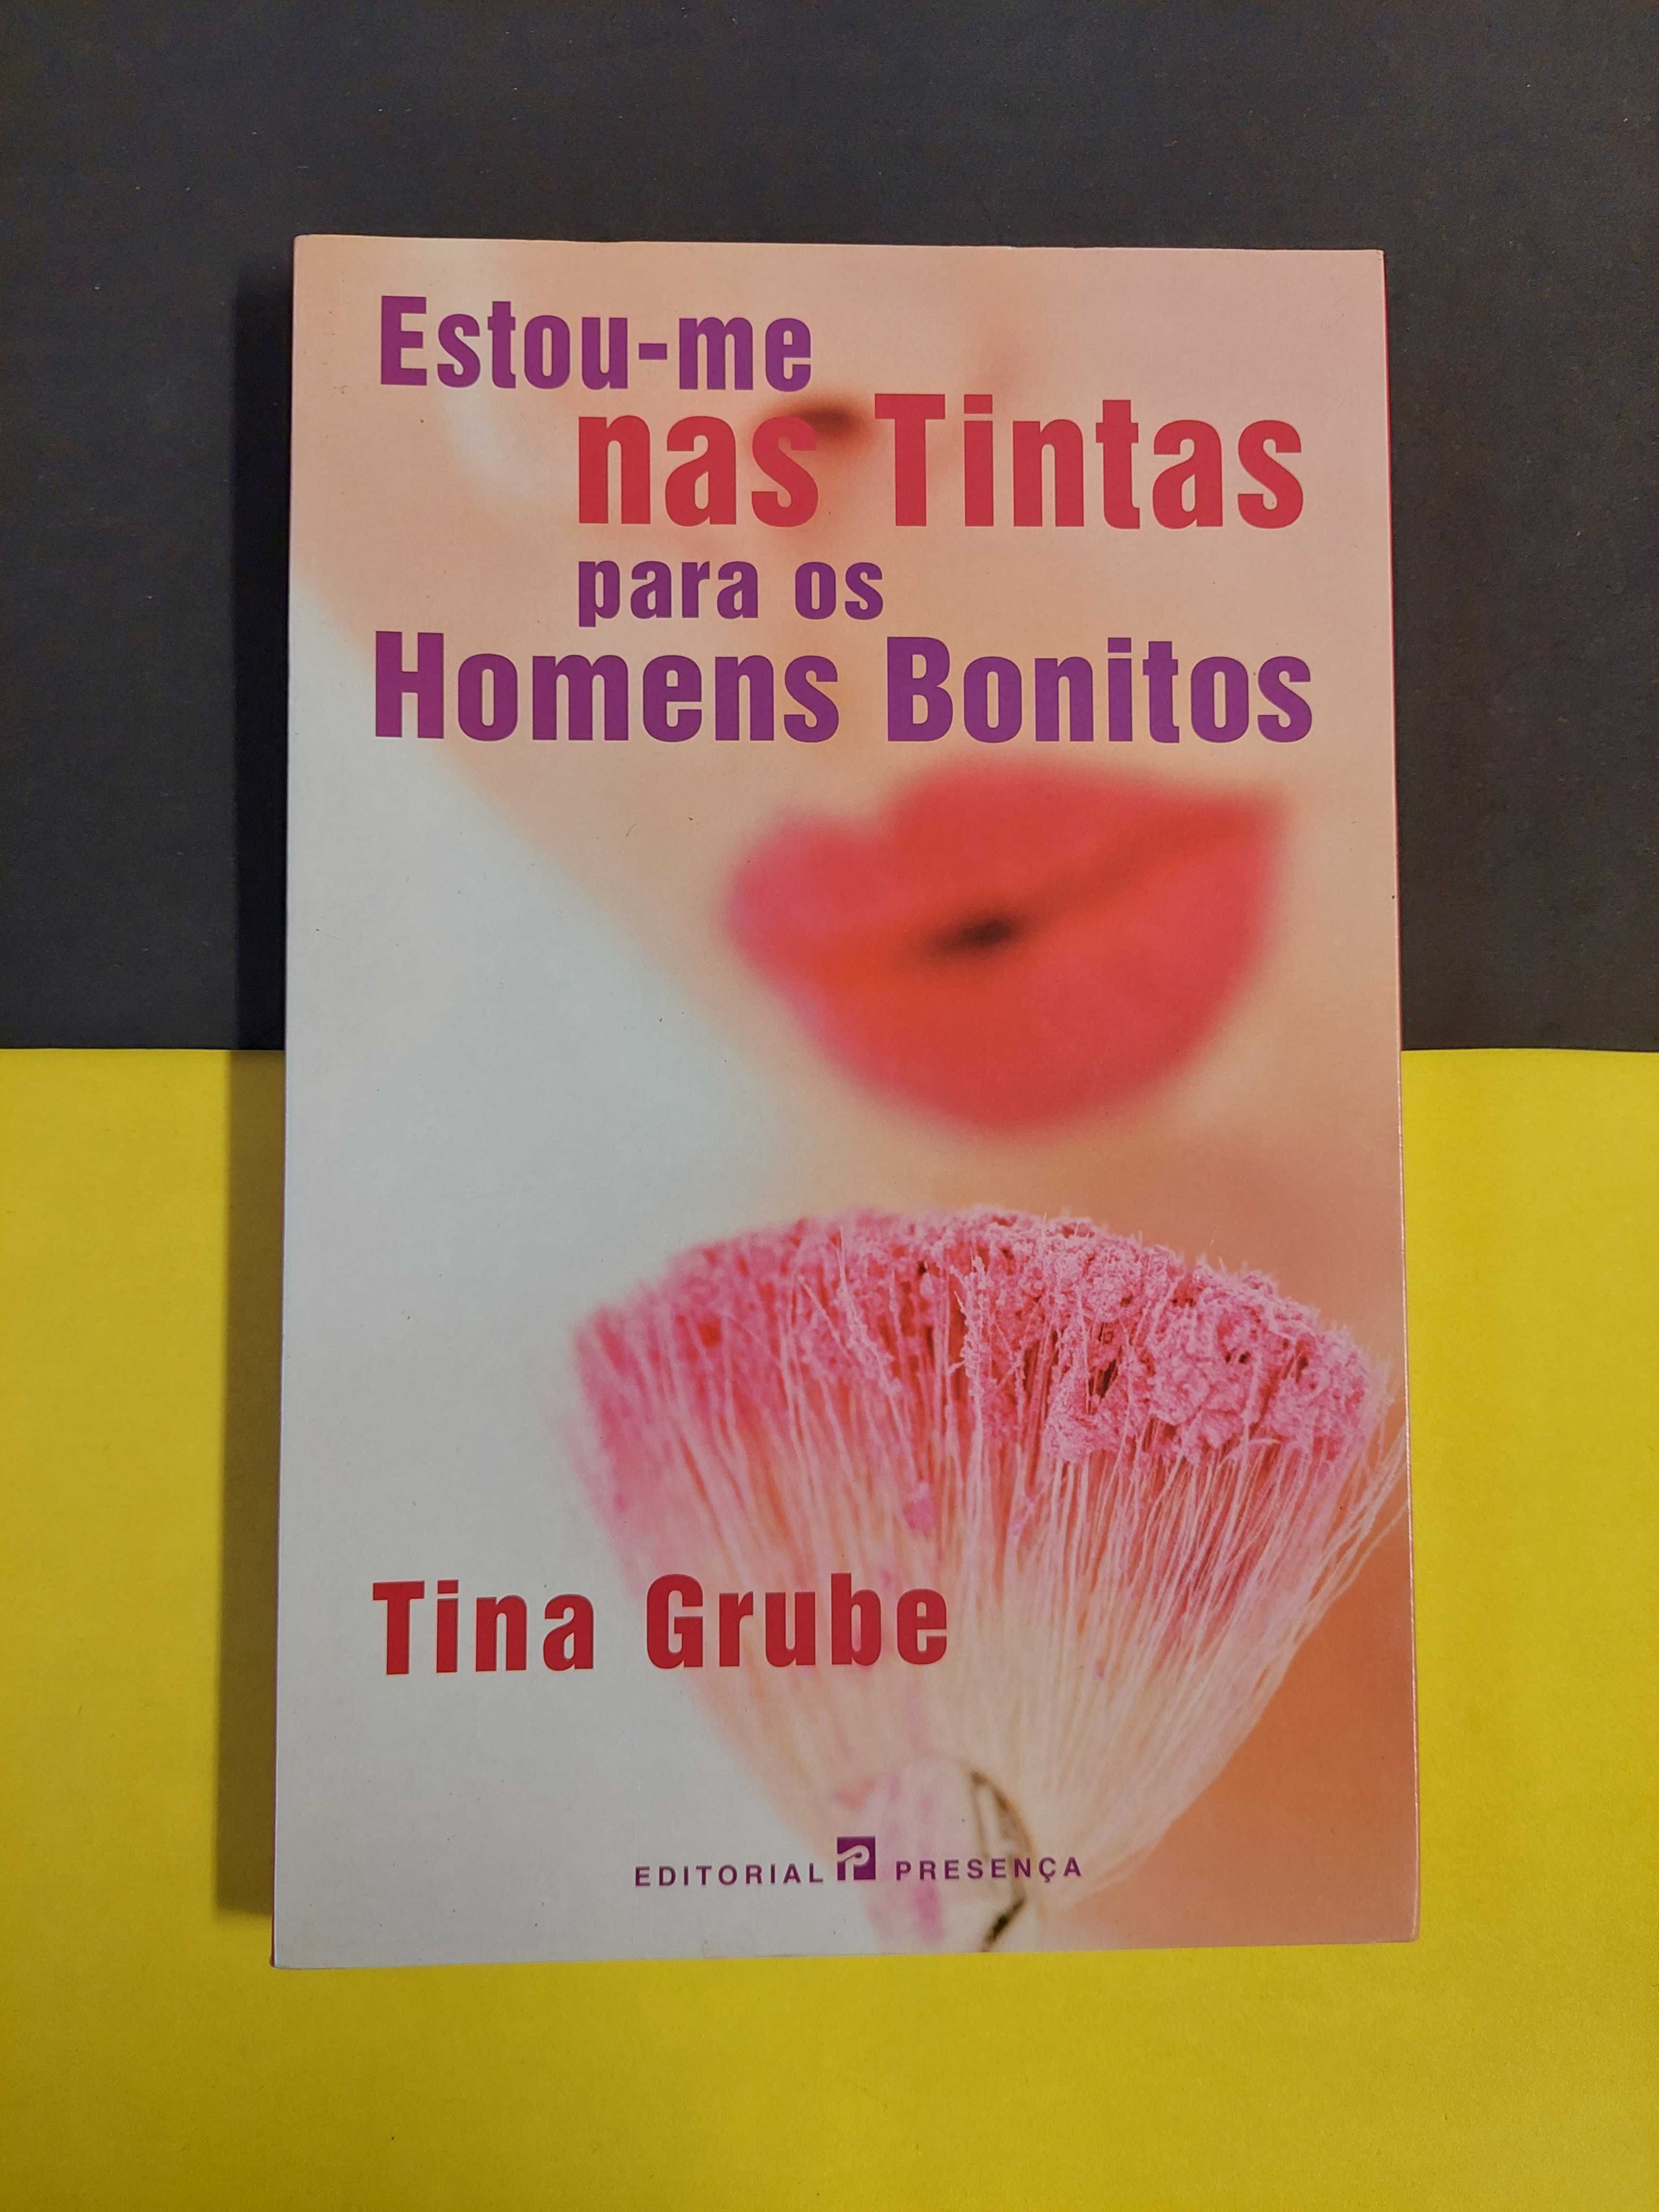 Tina Grube - Estou-me nas tintas para os homens bonitos